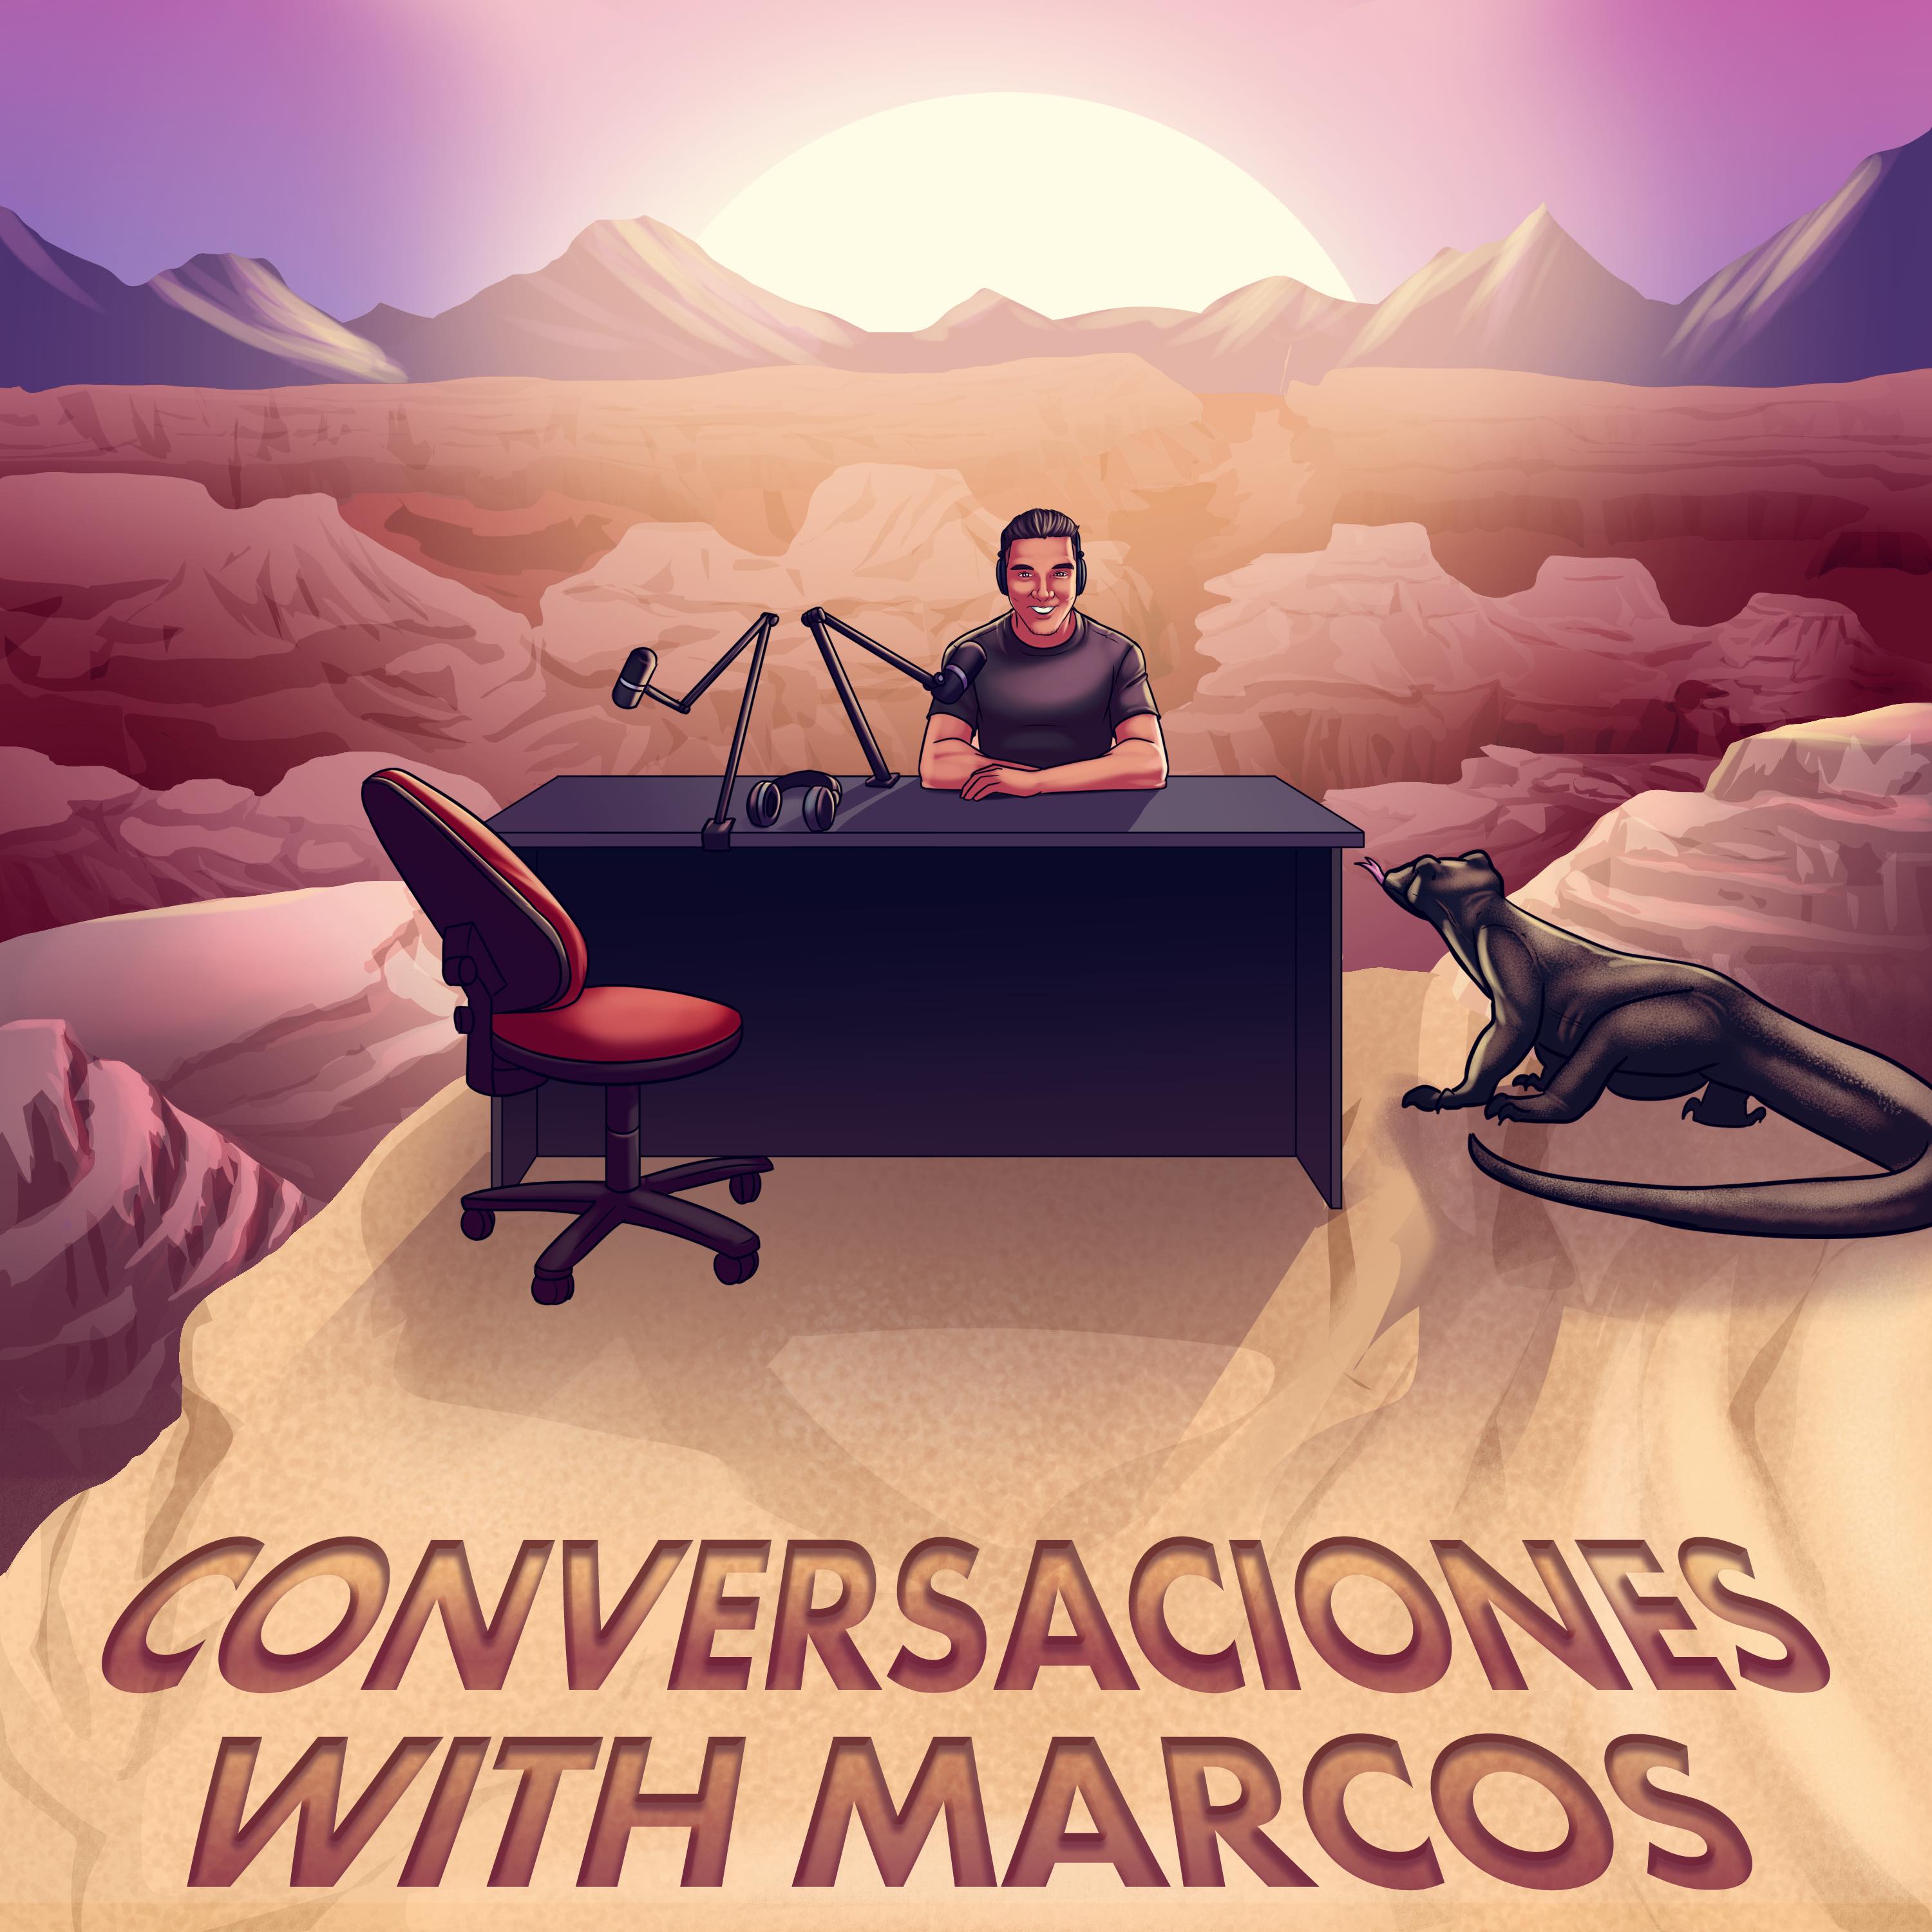 Artwork for Conversaciones with Marcos